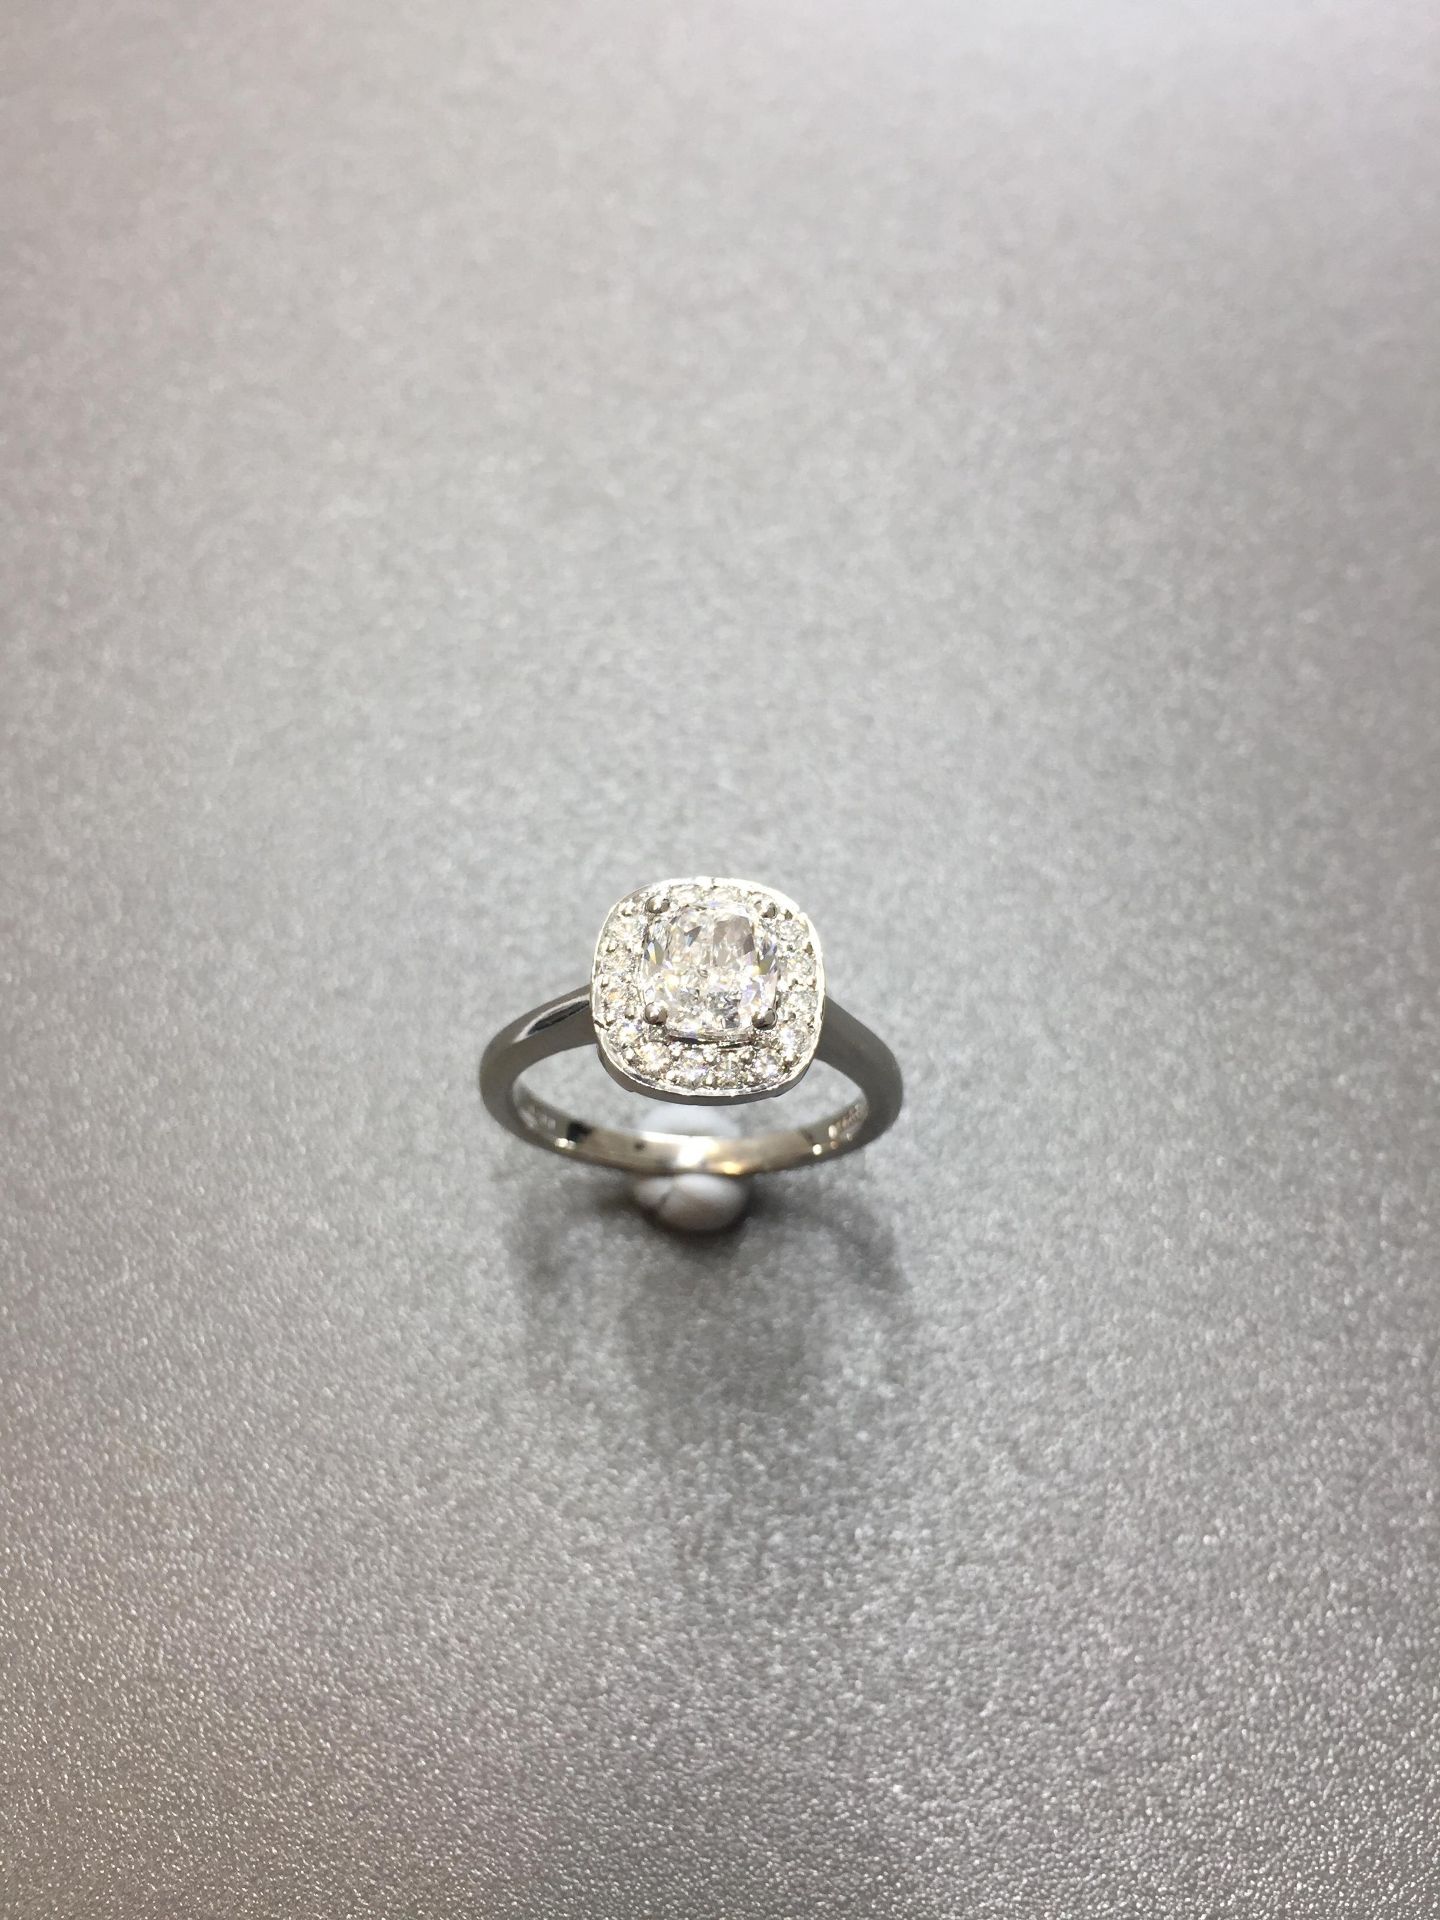 1ct Cushion cut diamond Solitaire Halo style ring,1ct h colour vs clarity cushion cut diamond, - Bild 3 aus 6